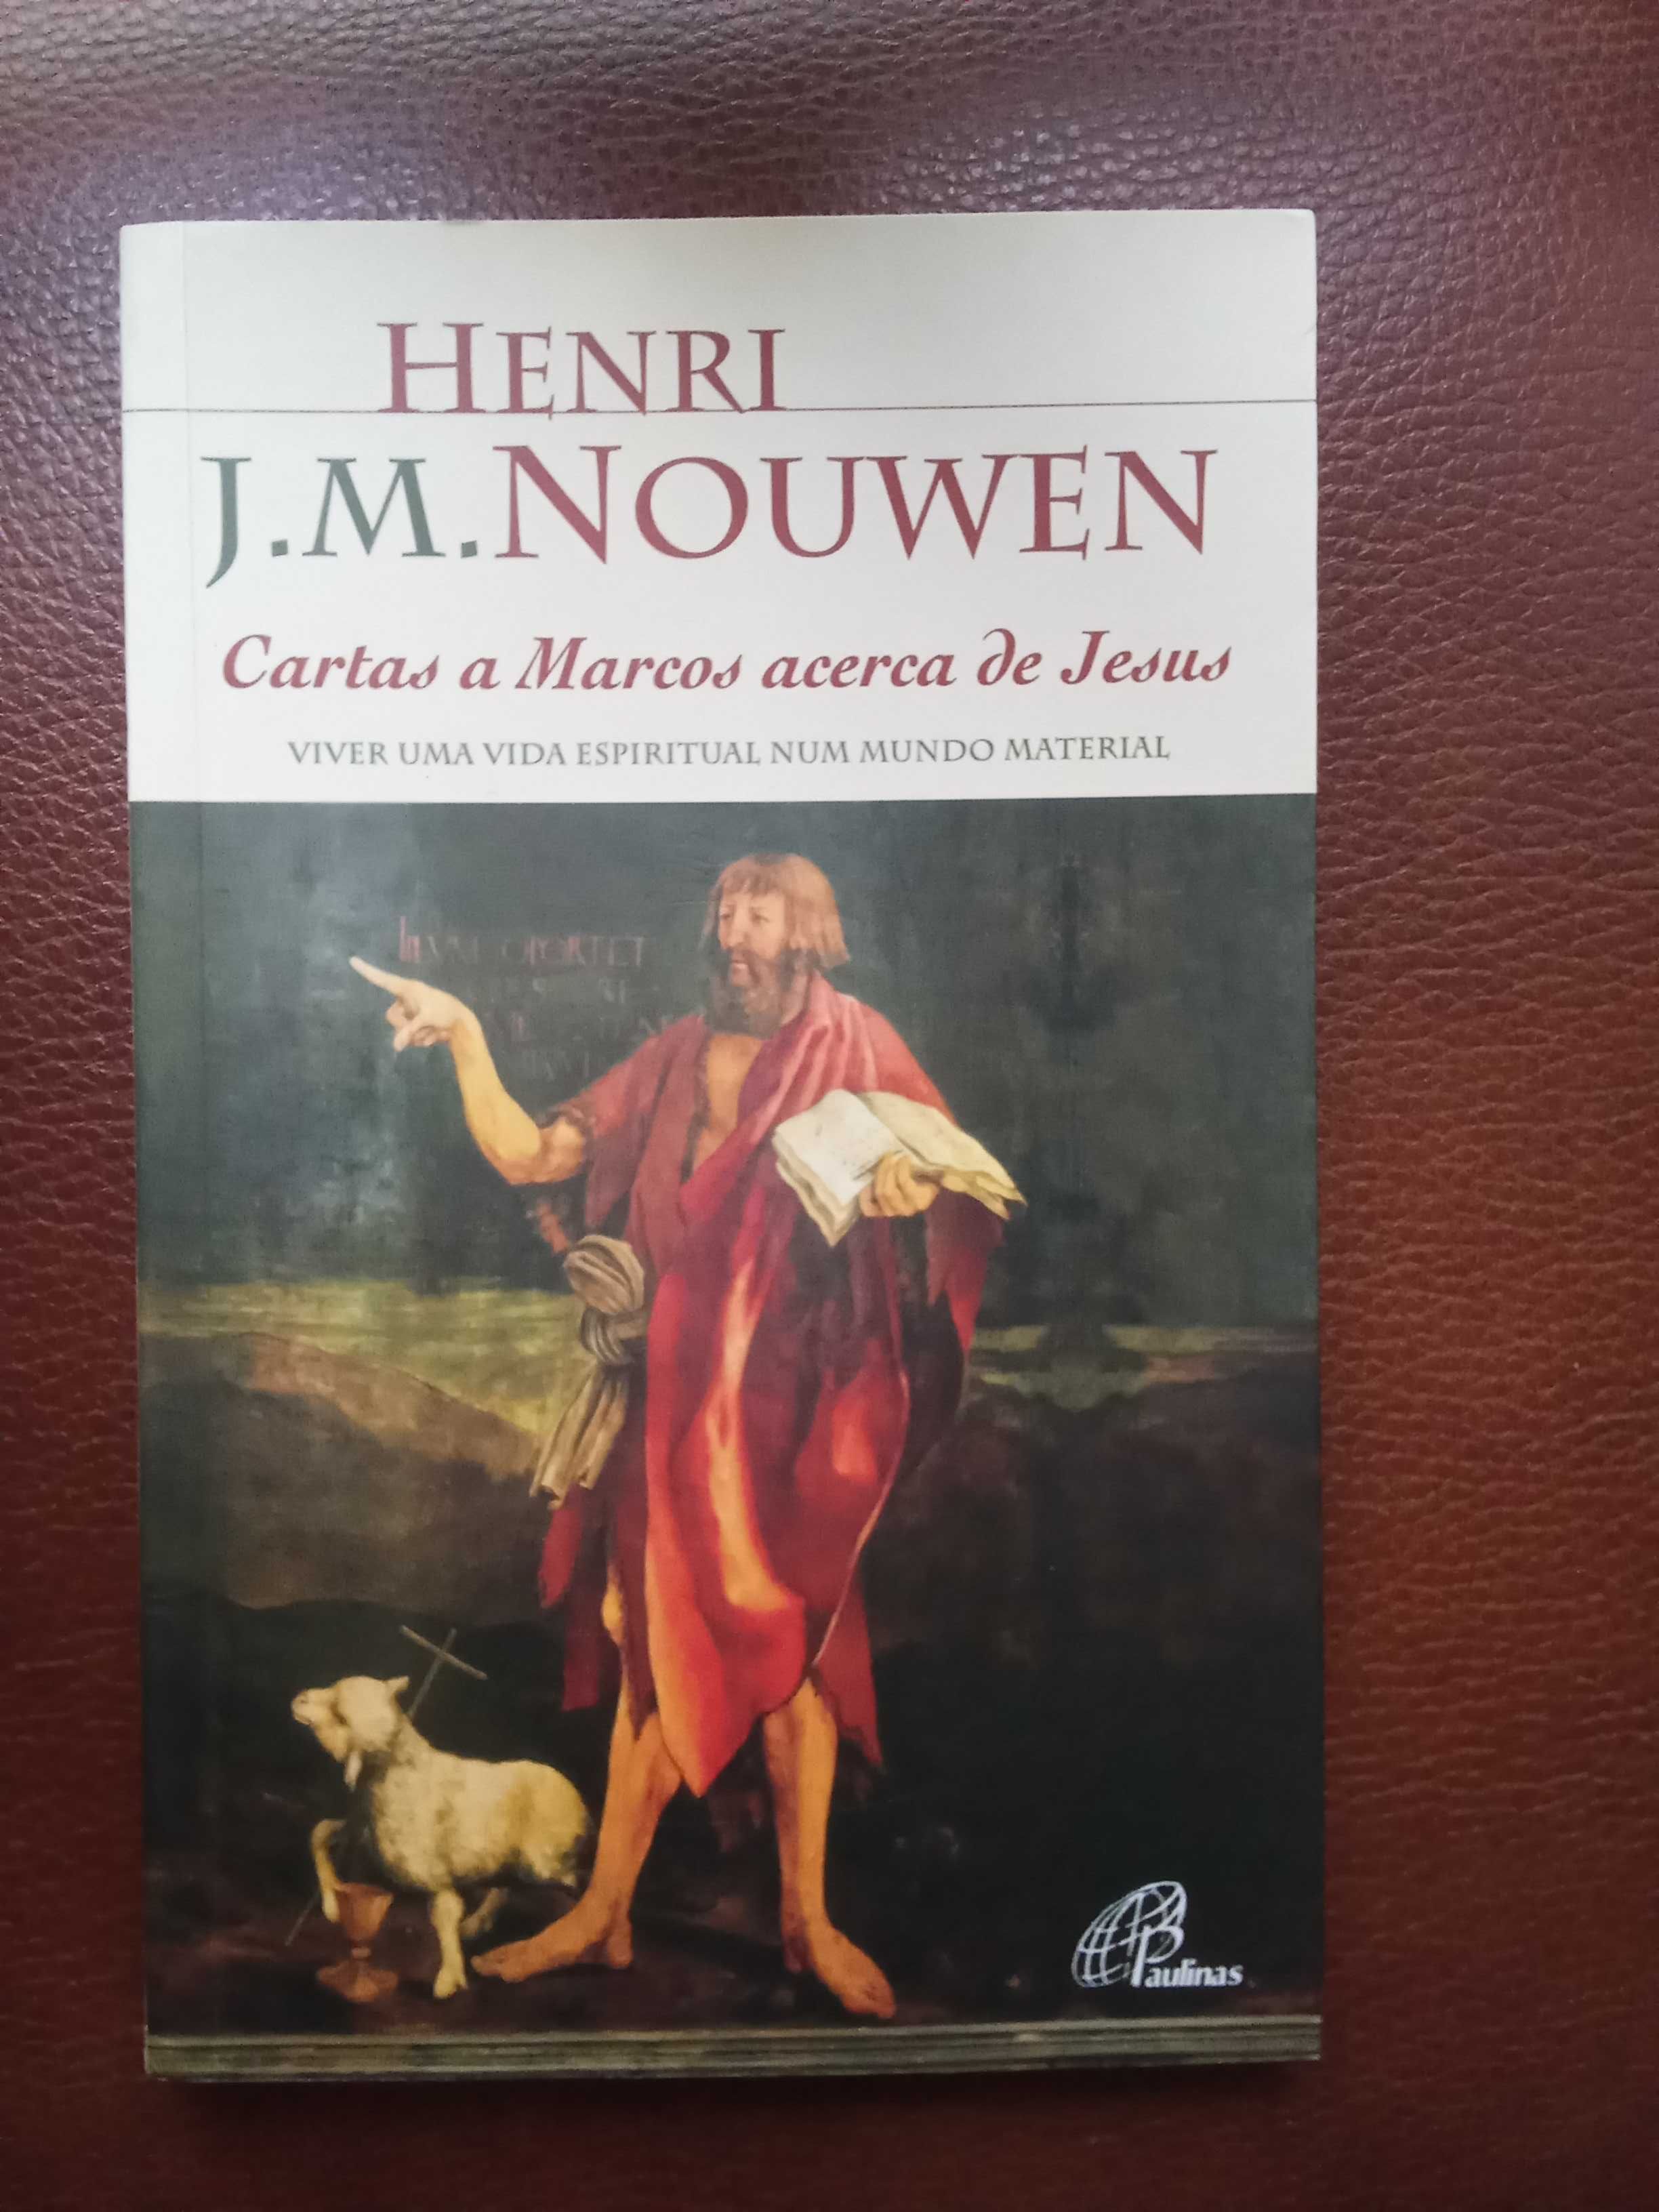 Cartas a Marcos Acerca de Jesus - Henri J.M. Nouwen